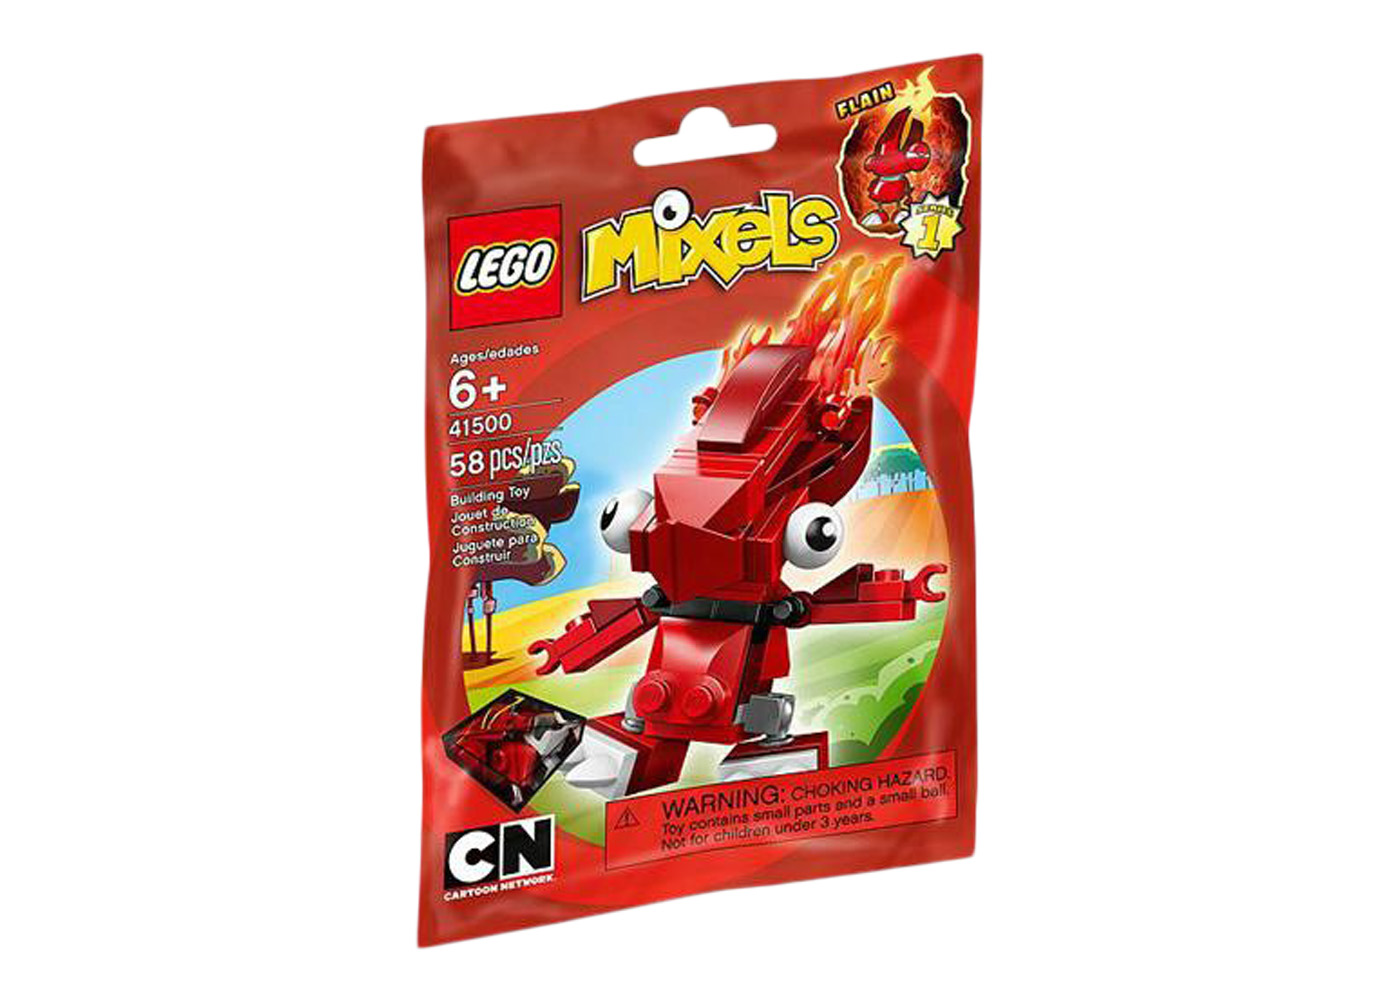 LEGO Mixels Flain Set 41500 - US